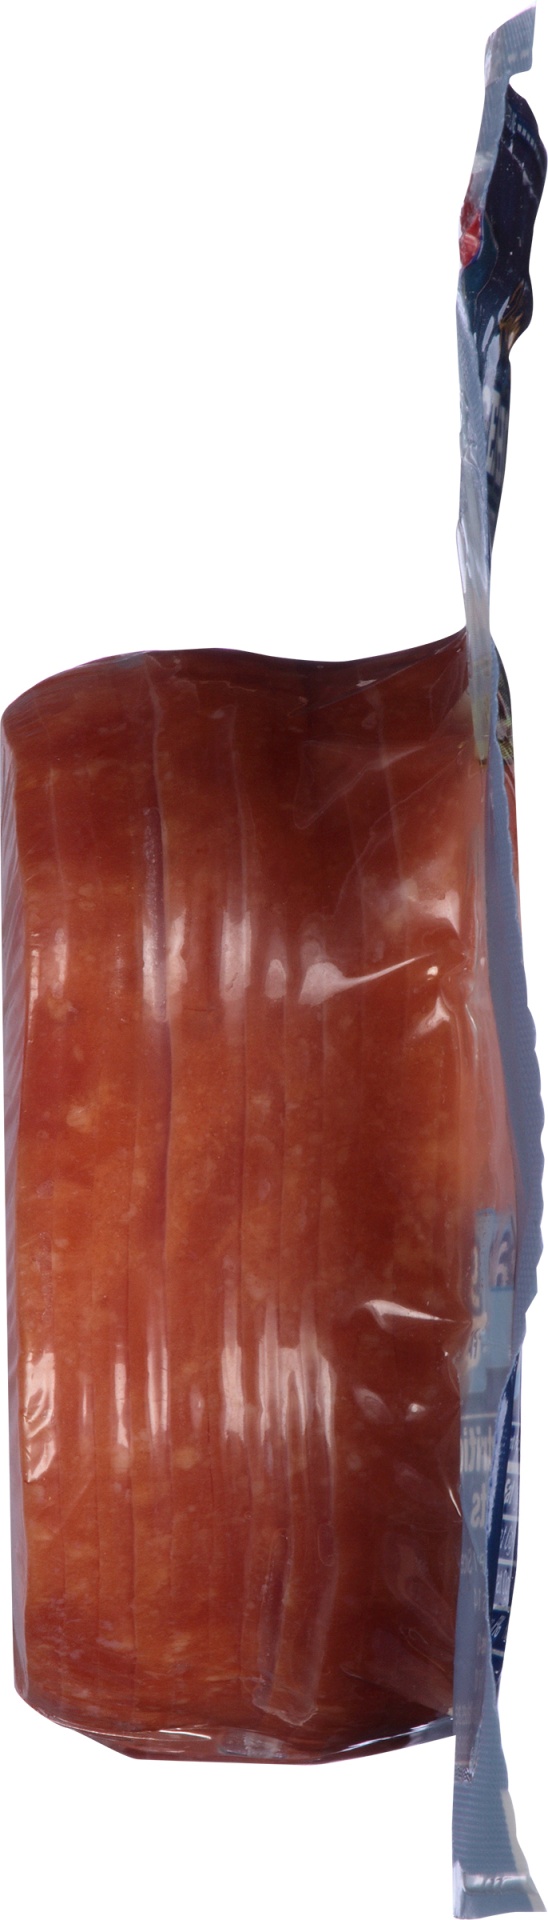 slide 2 of 6, Farmland Special Select Hickory Smoked Honey Ham, 16 oz